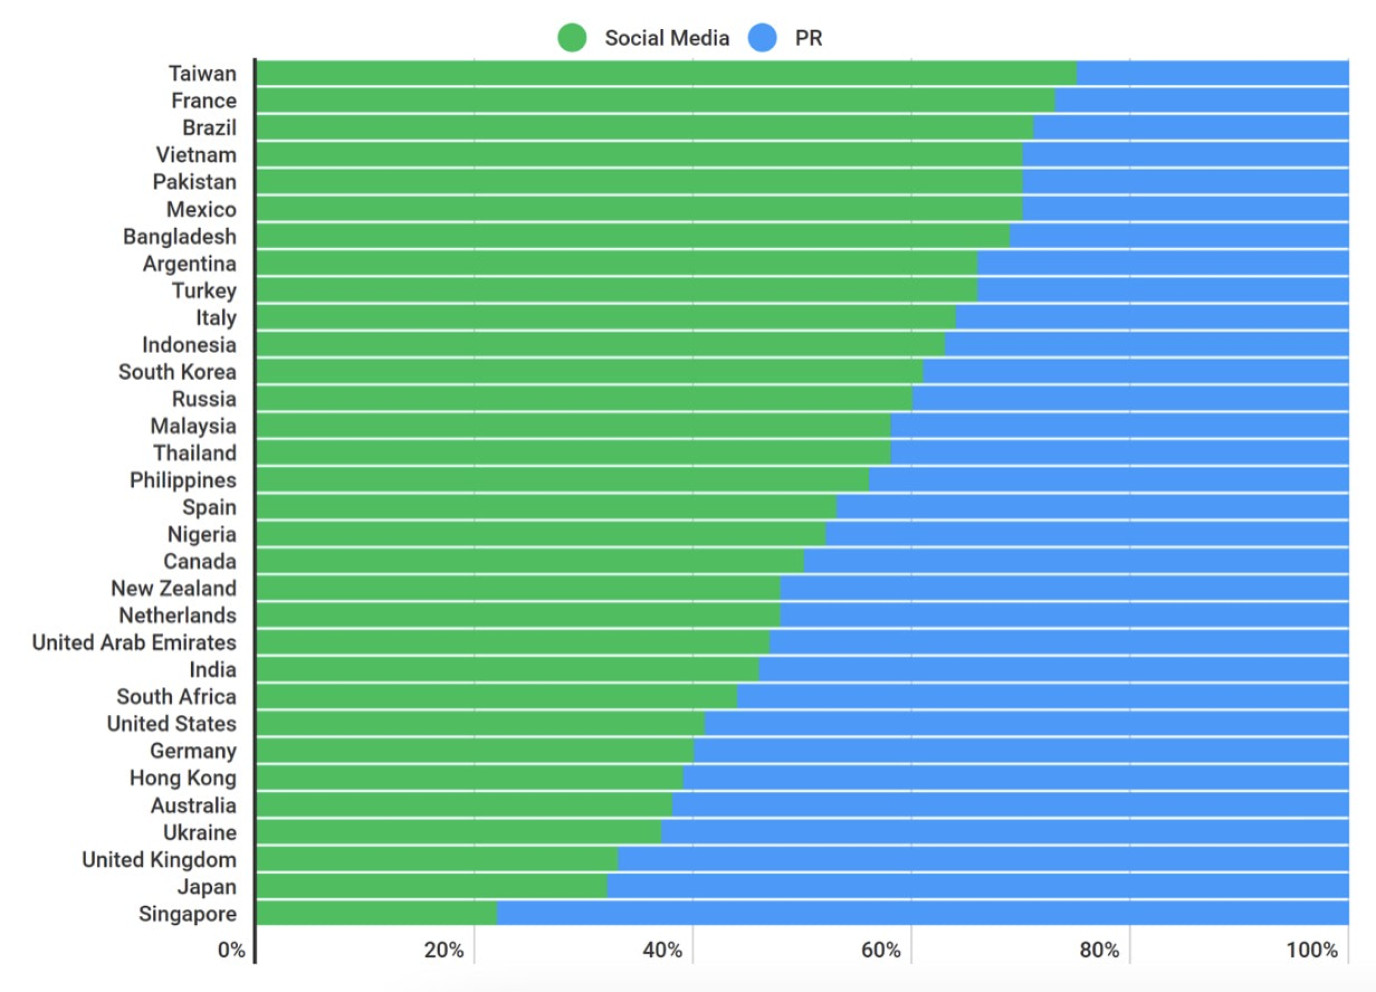 chart countries proportion queries social media agencies vs pr agencies